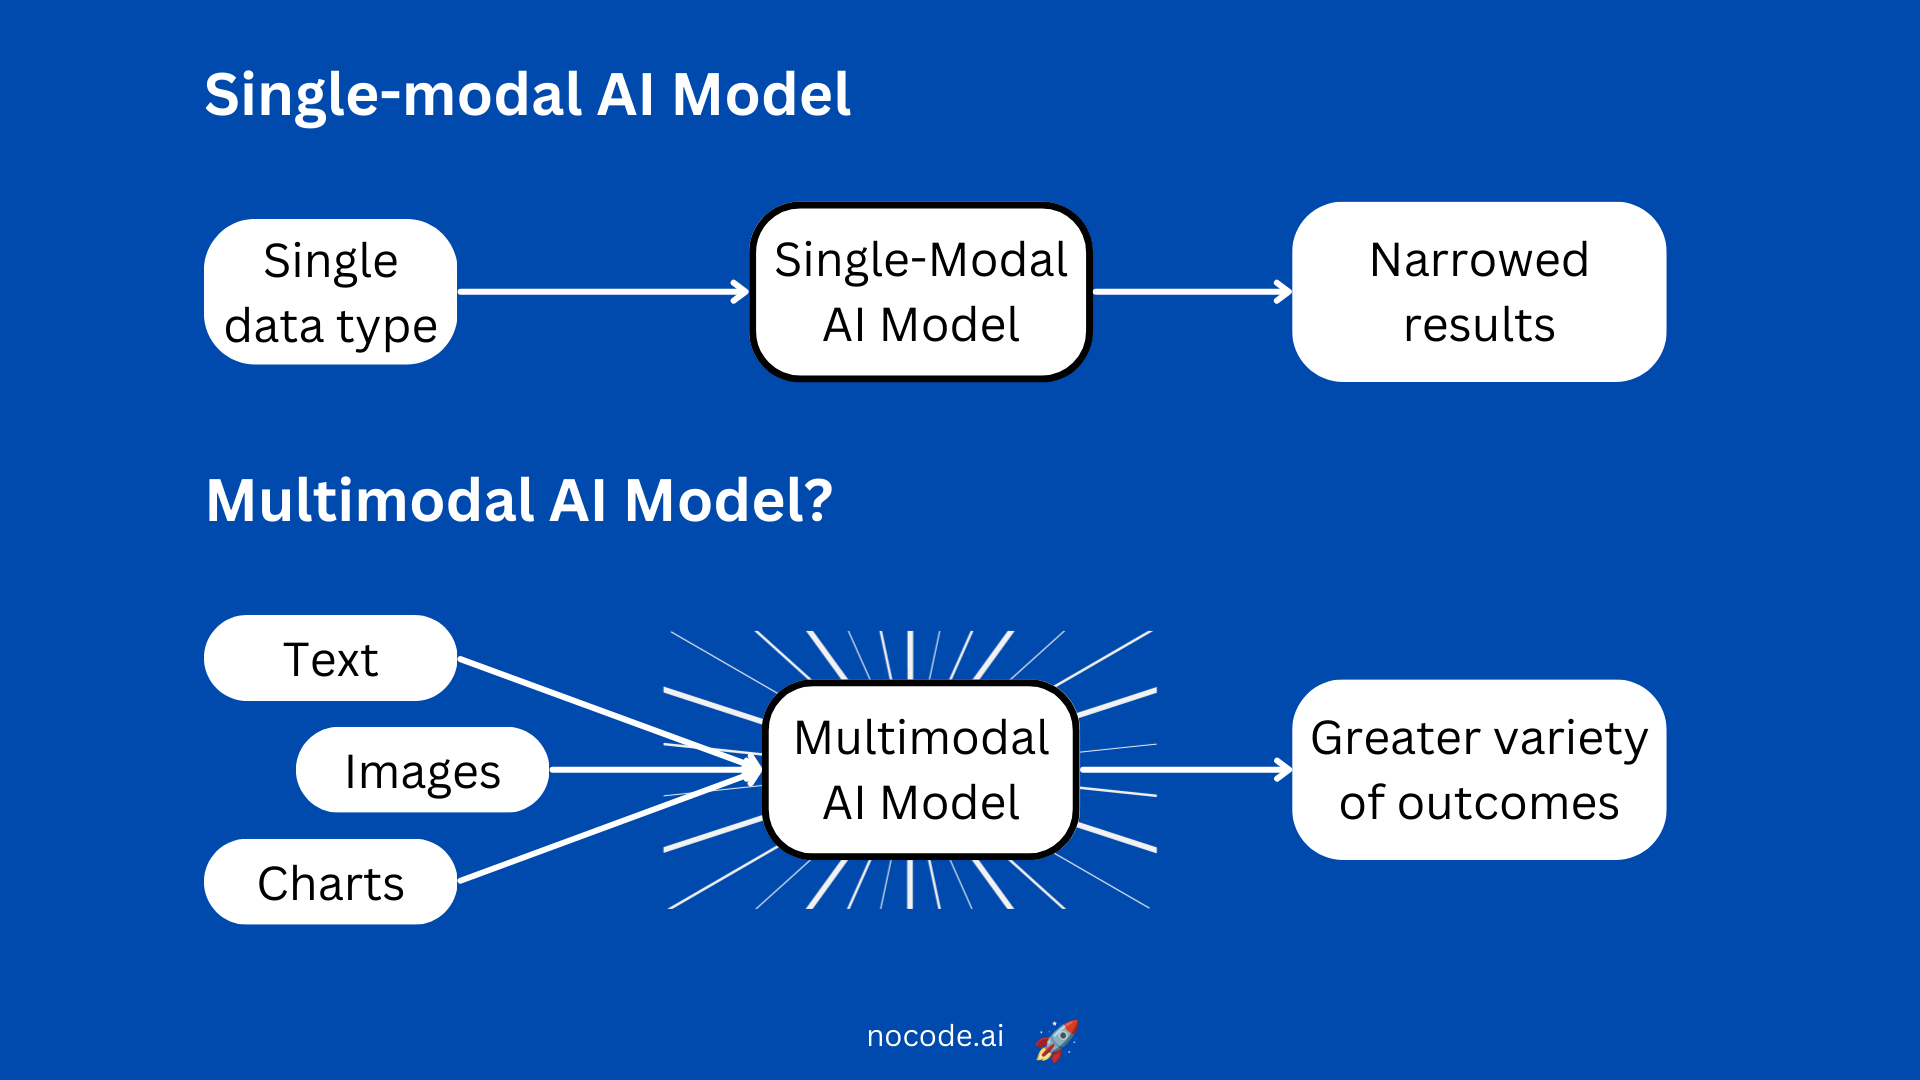 Single-modal AI model vs Multimodal AI model